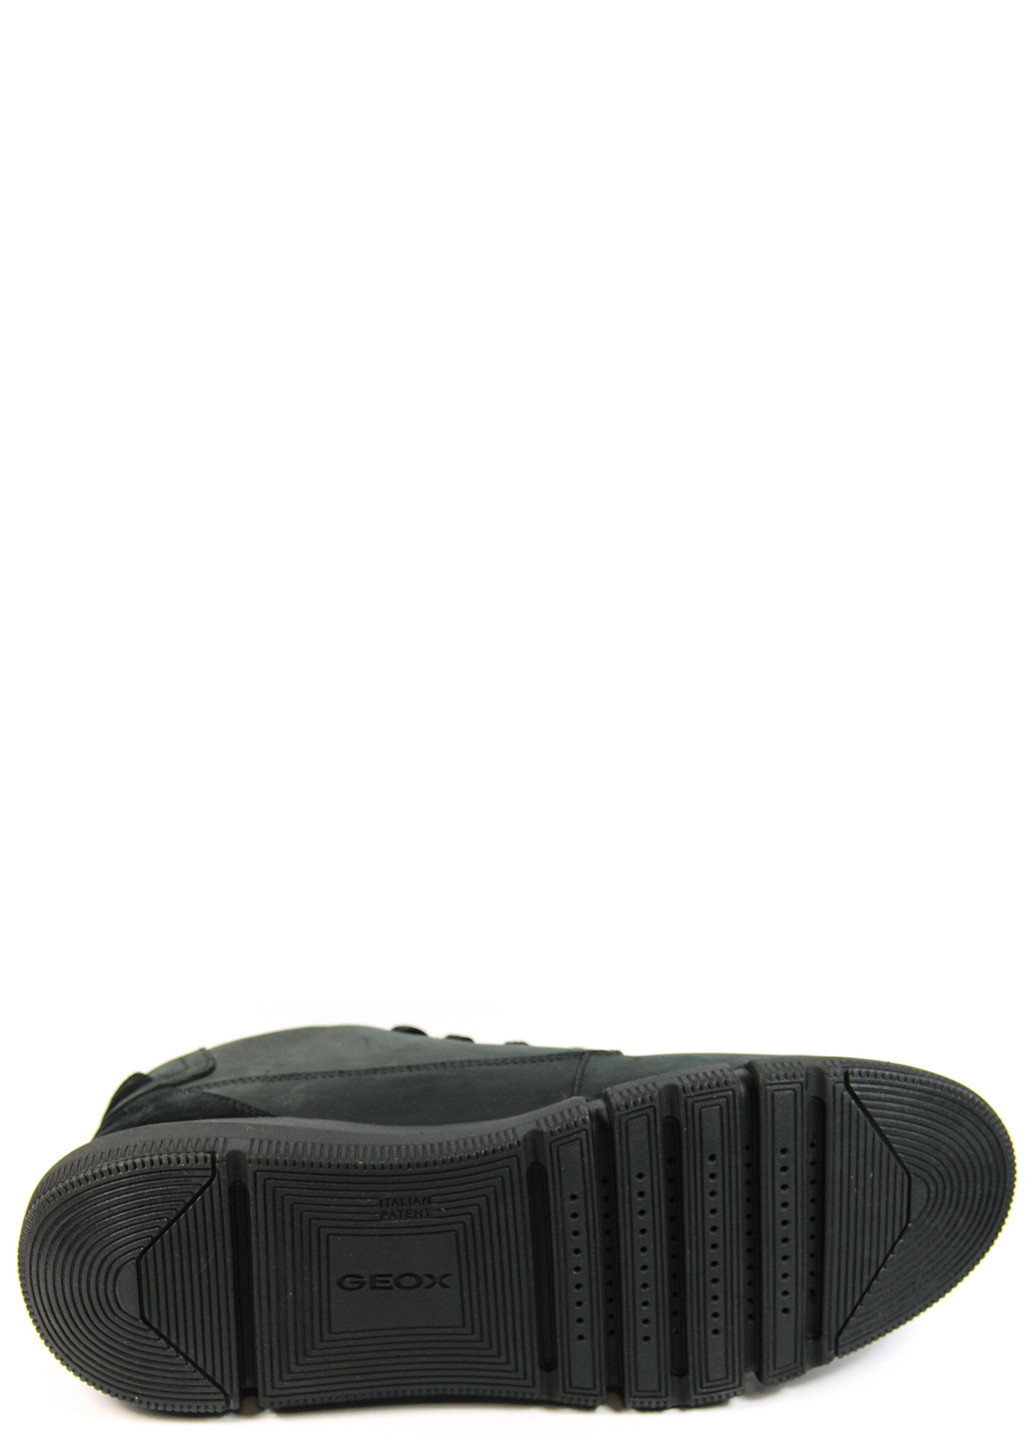 Черные осенние мужские ботинки adacter Geox